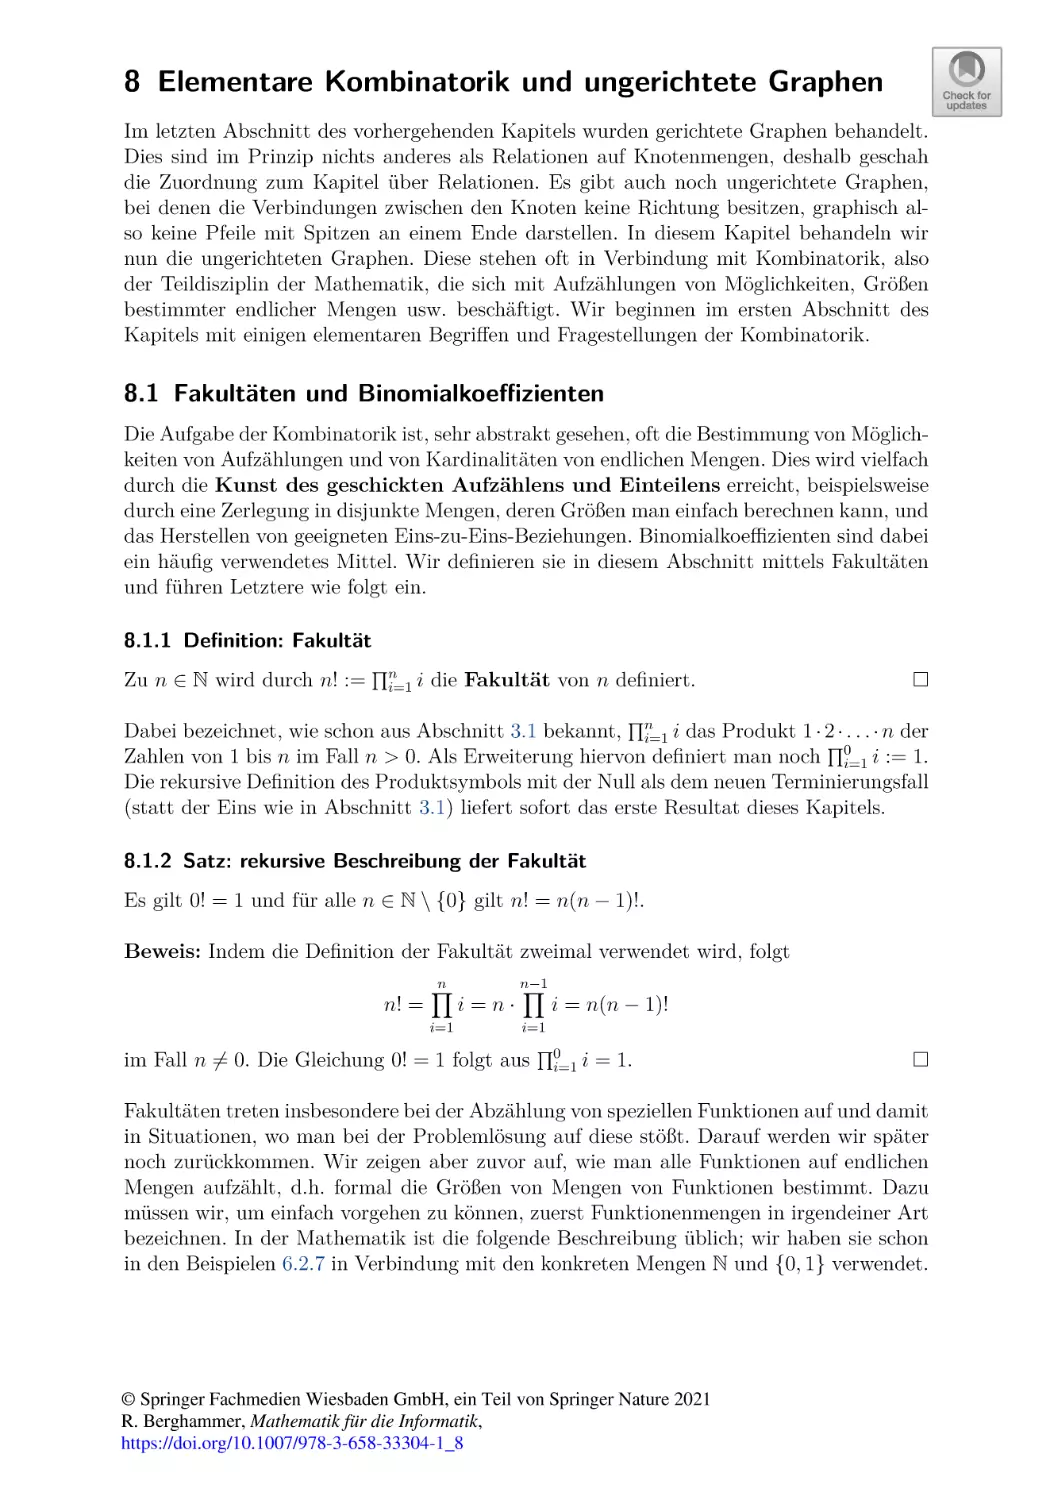 8 Elementare Kombinatorik und ungerichtete Graphen
8.1 Fakultäten und Binomialkoeffizienten
8.1.1 Definition
8.1.2 Satz